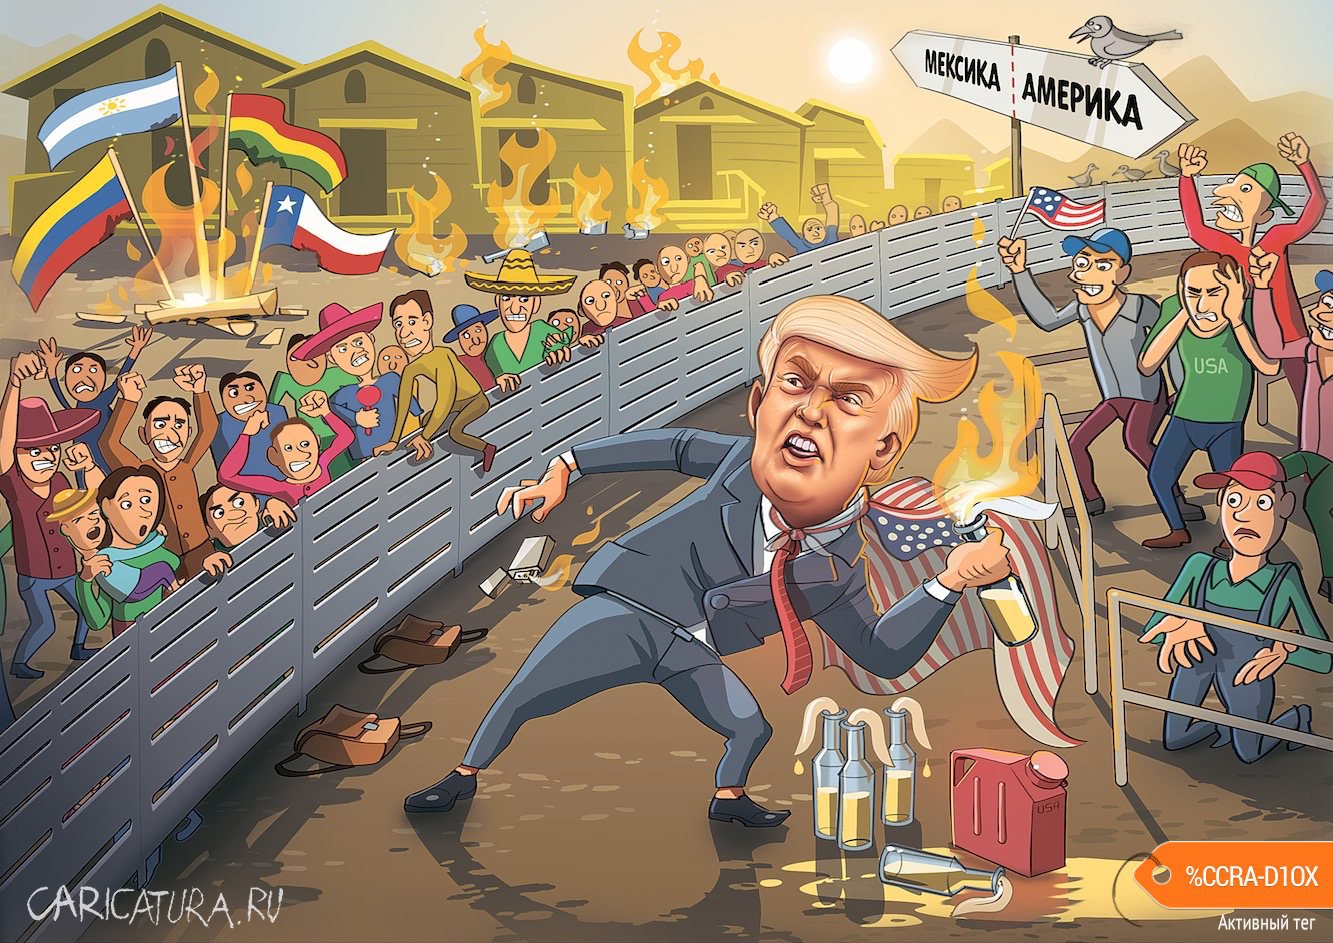 Карикатура "Трамп не хочет впускать мигрантов", Дмитрий Стариков